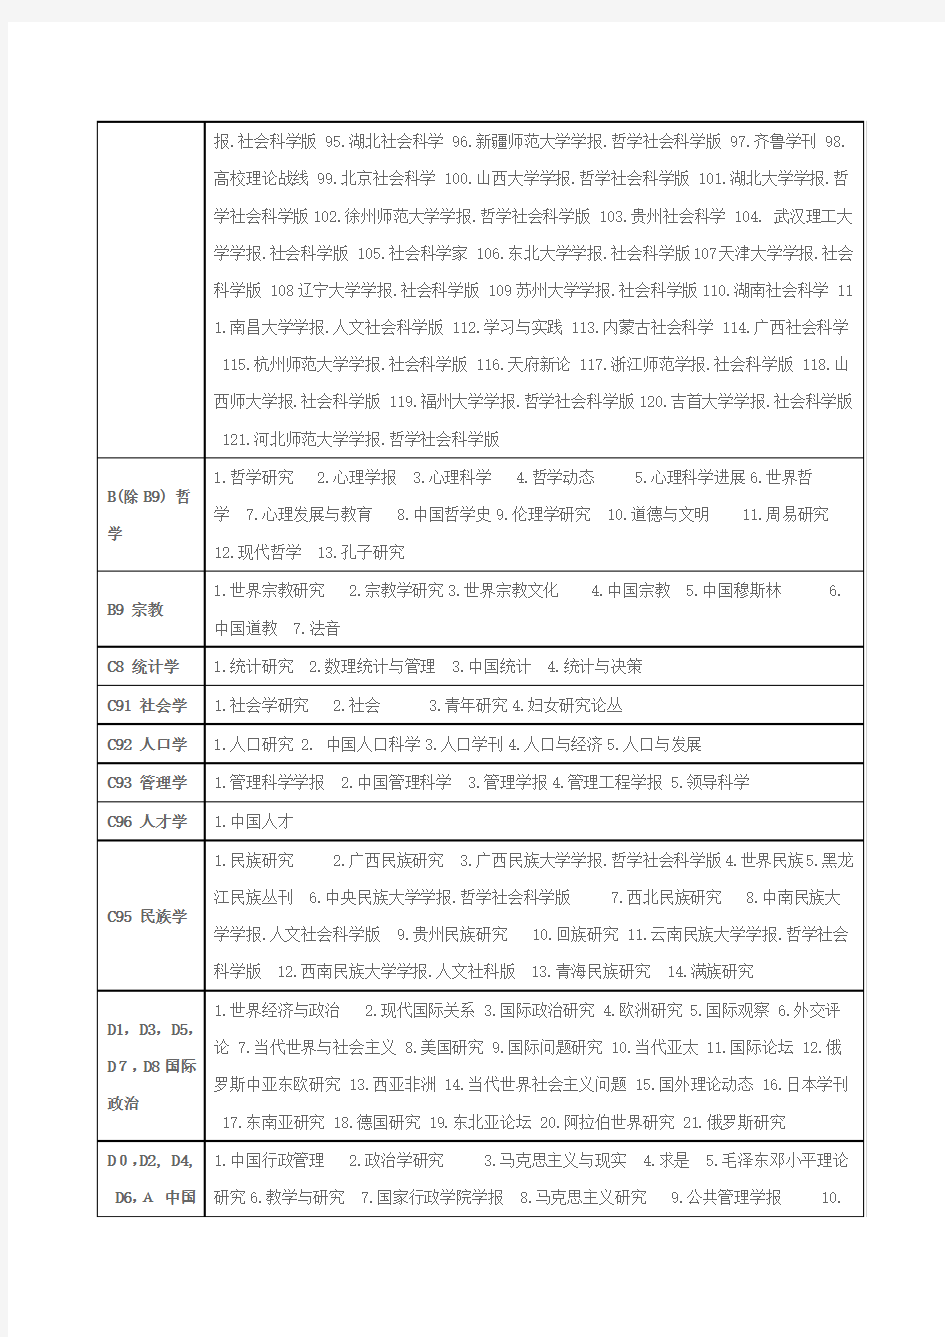 最新北大《中文核心期刊目录总览(第六版)》(2011版)